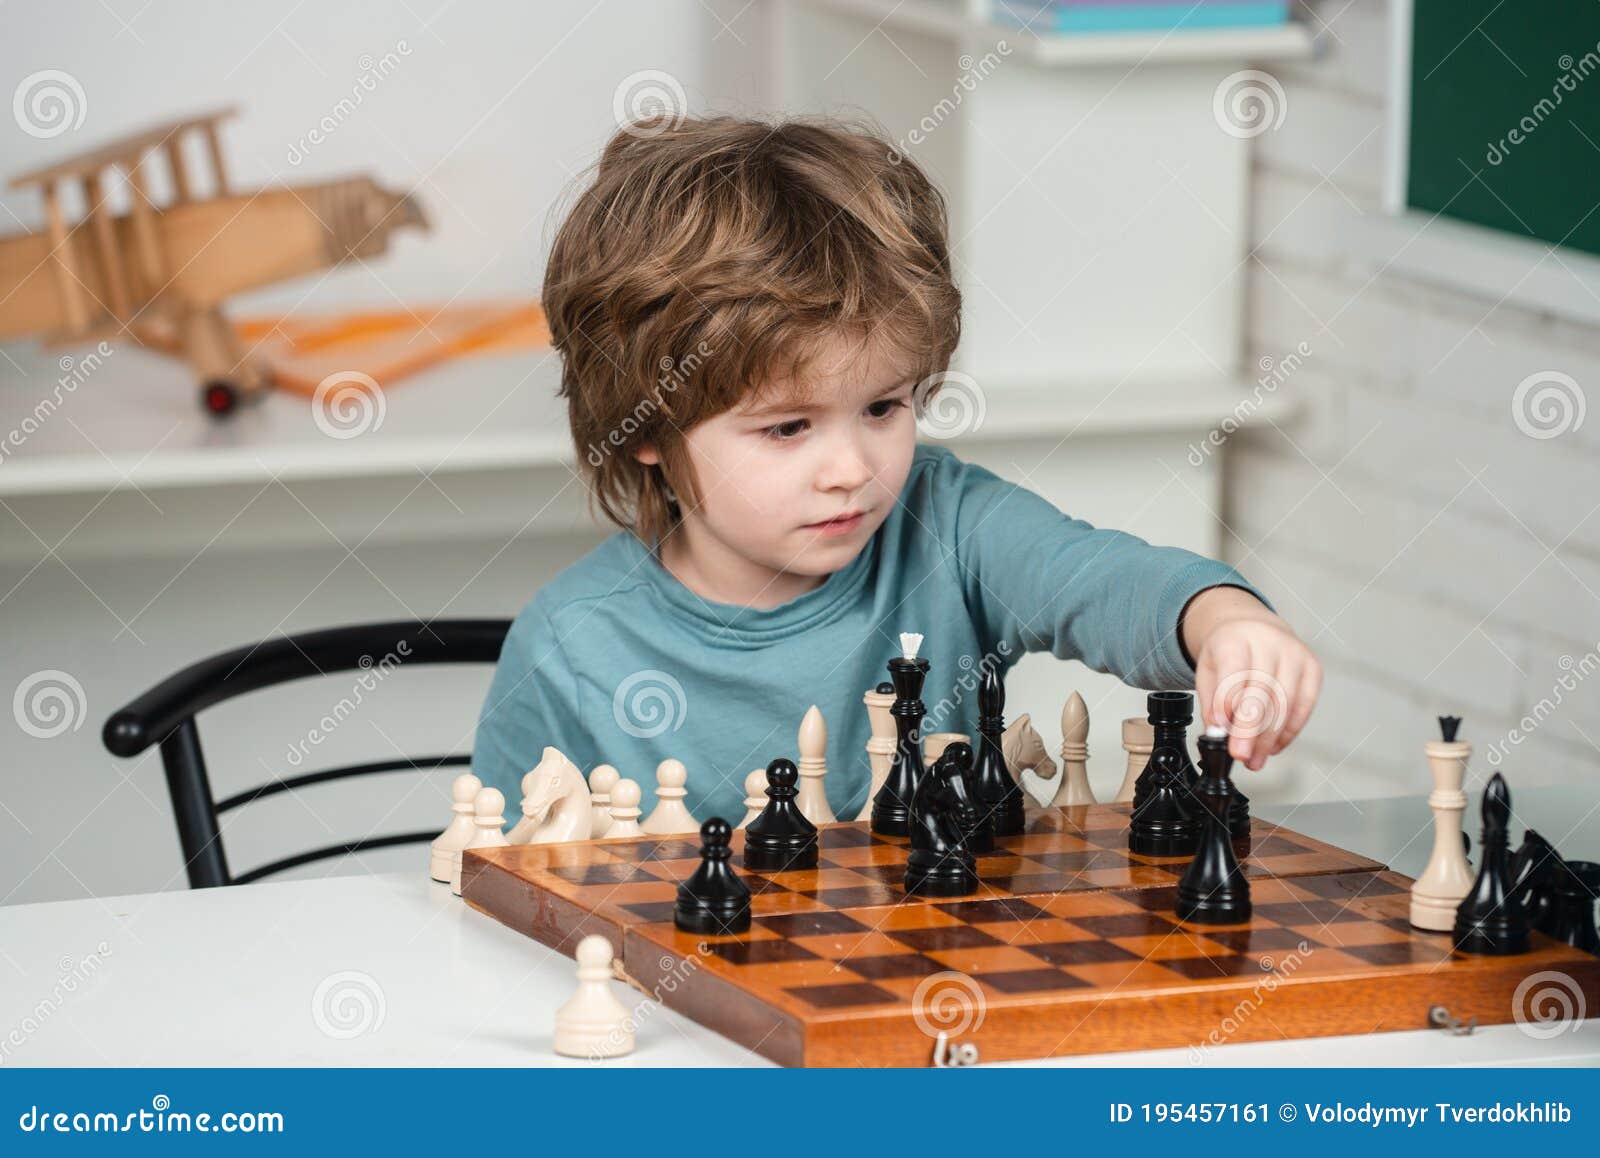 Menino e menina estão jogando xadrez em casa. Crianças jogando xadrez  [download] - Designi